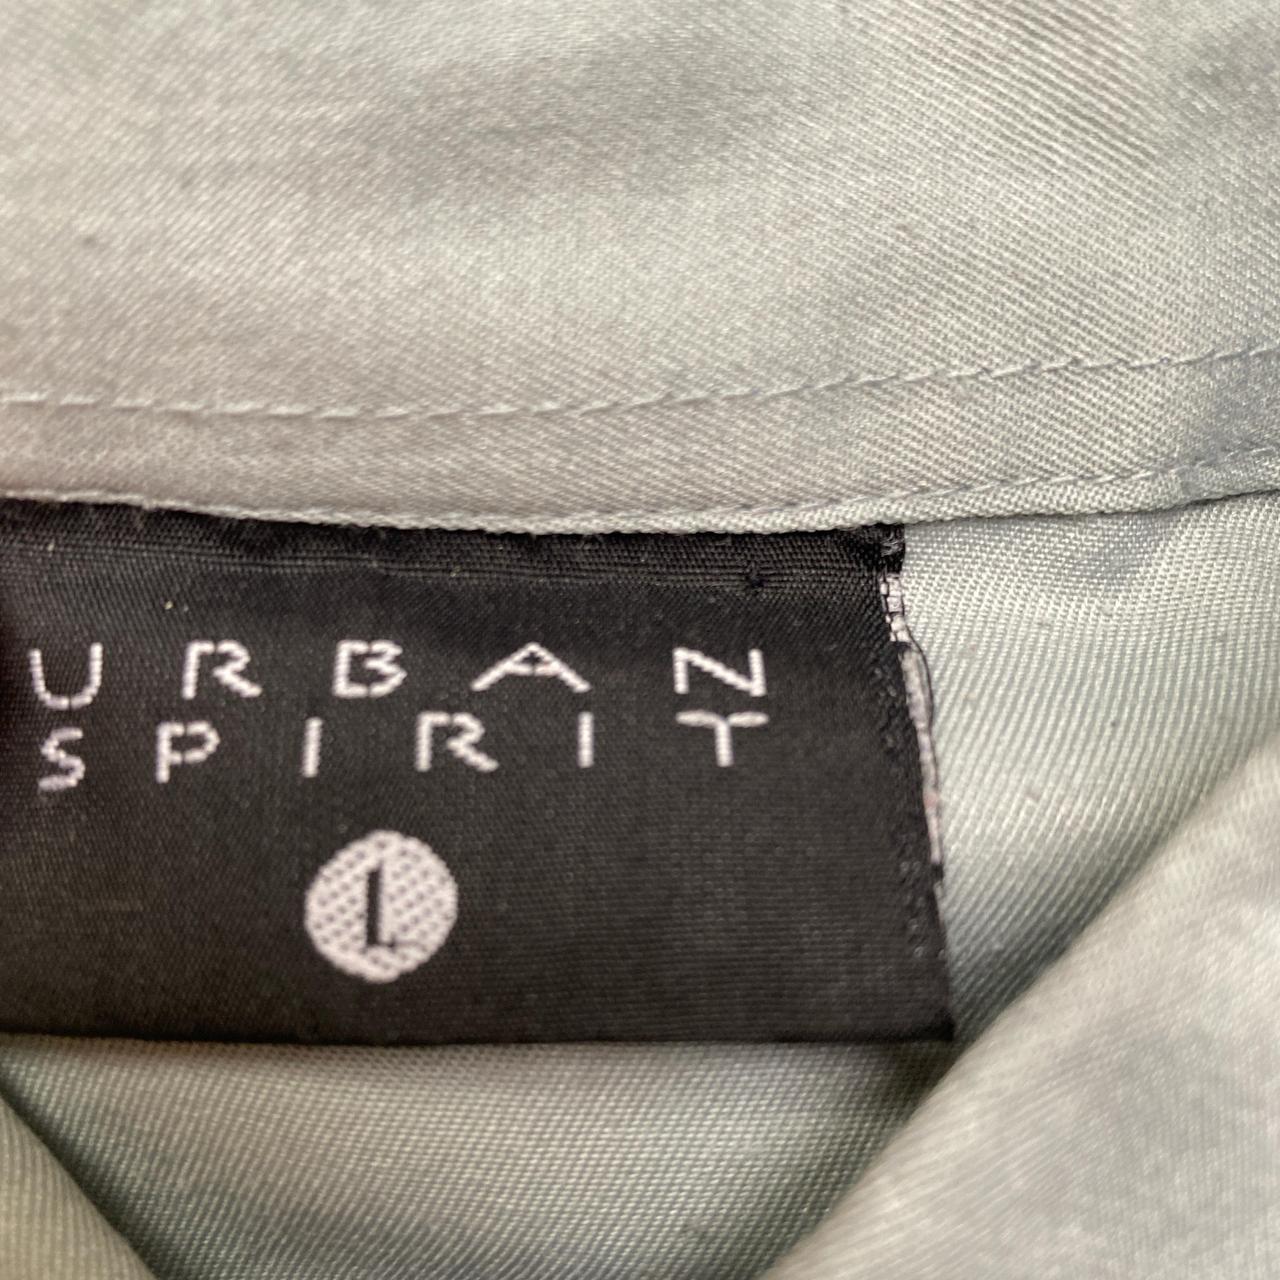 Y2K Japanese Urban Spirit Vintage Short Sleeve Shirt